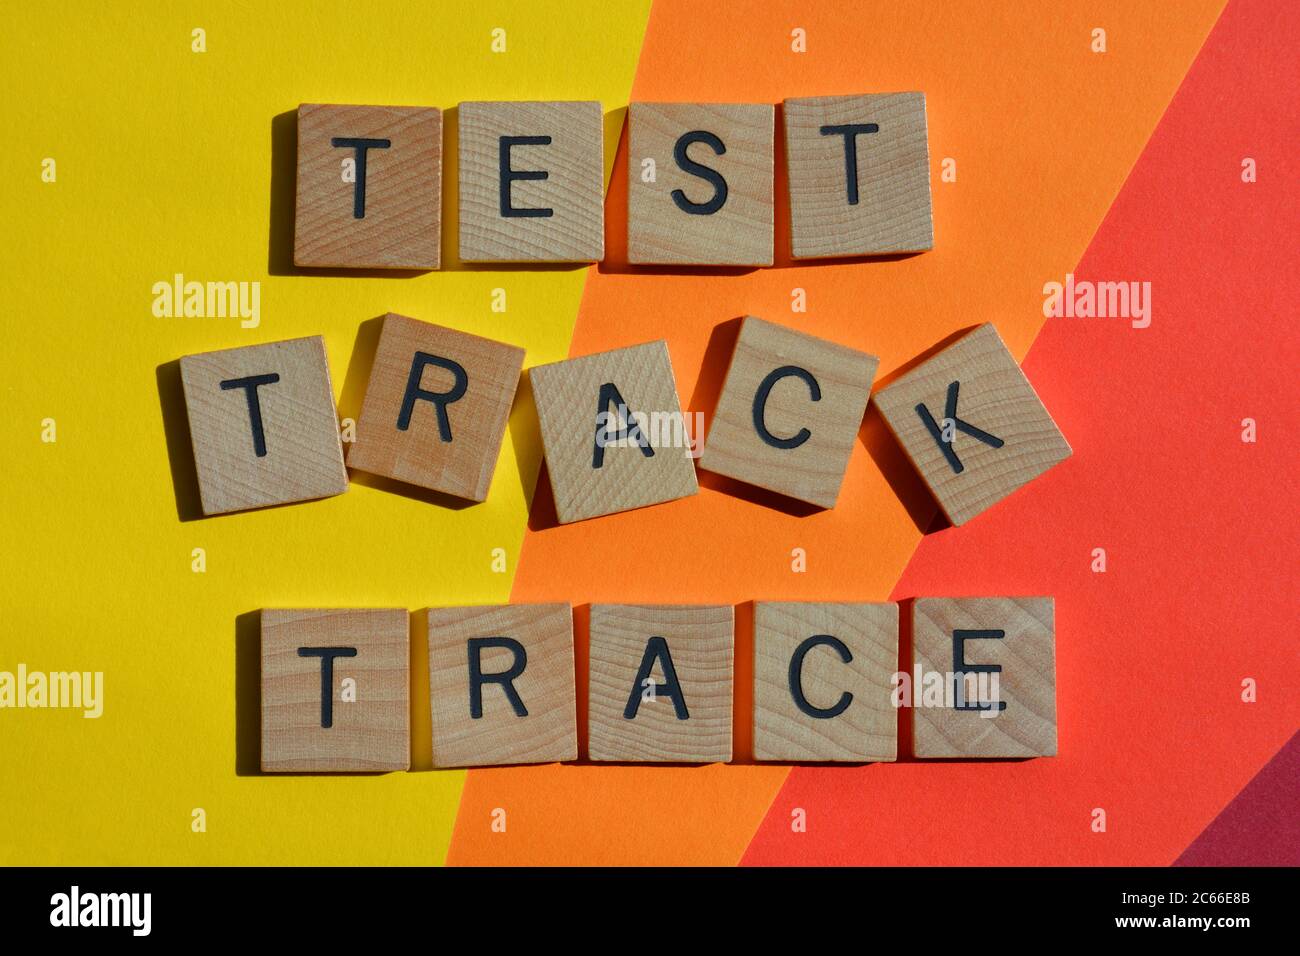 Test, traccia, traccia, parole in lettere alfabetiche in legno isolate su sfondo colorato Foto Stock